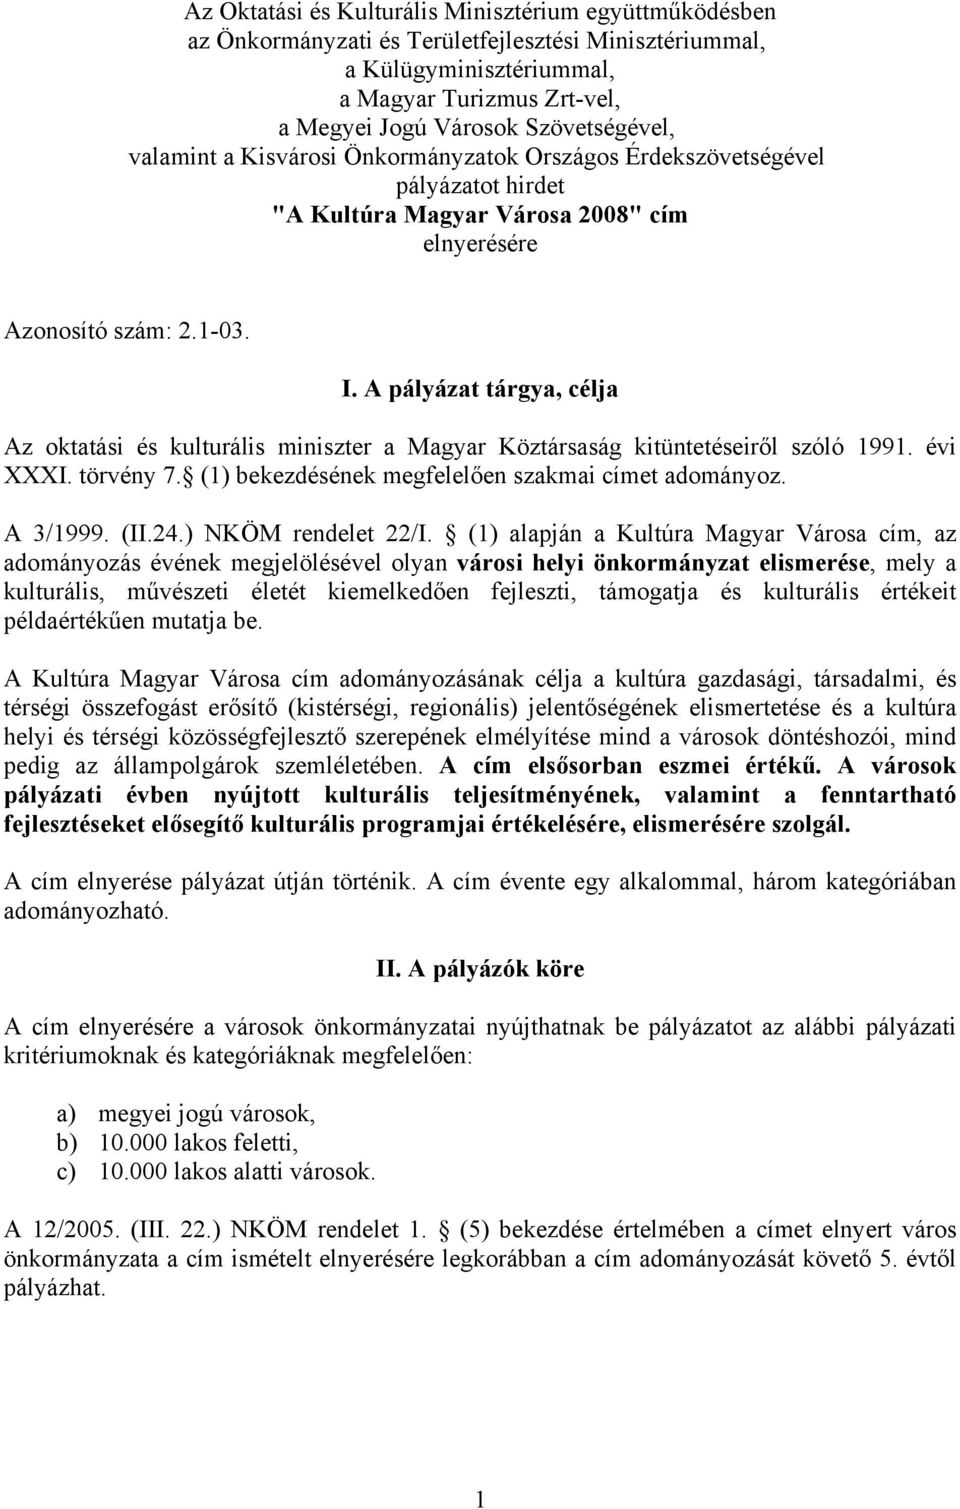 A pályázat tárgya, célja Az oktatási és kulturális miniszter a Magyar Köztársaság kitüntetéseiről szóló 1991. évi XXXI. törvény 7. (1) bekezdésének megfelelően szakmai címet adományoz. A 3/1999. (II.